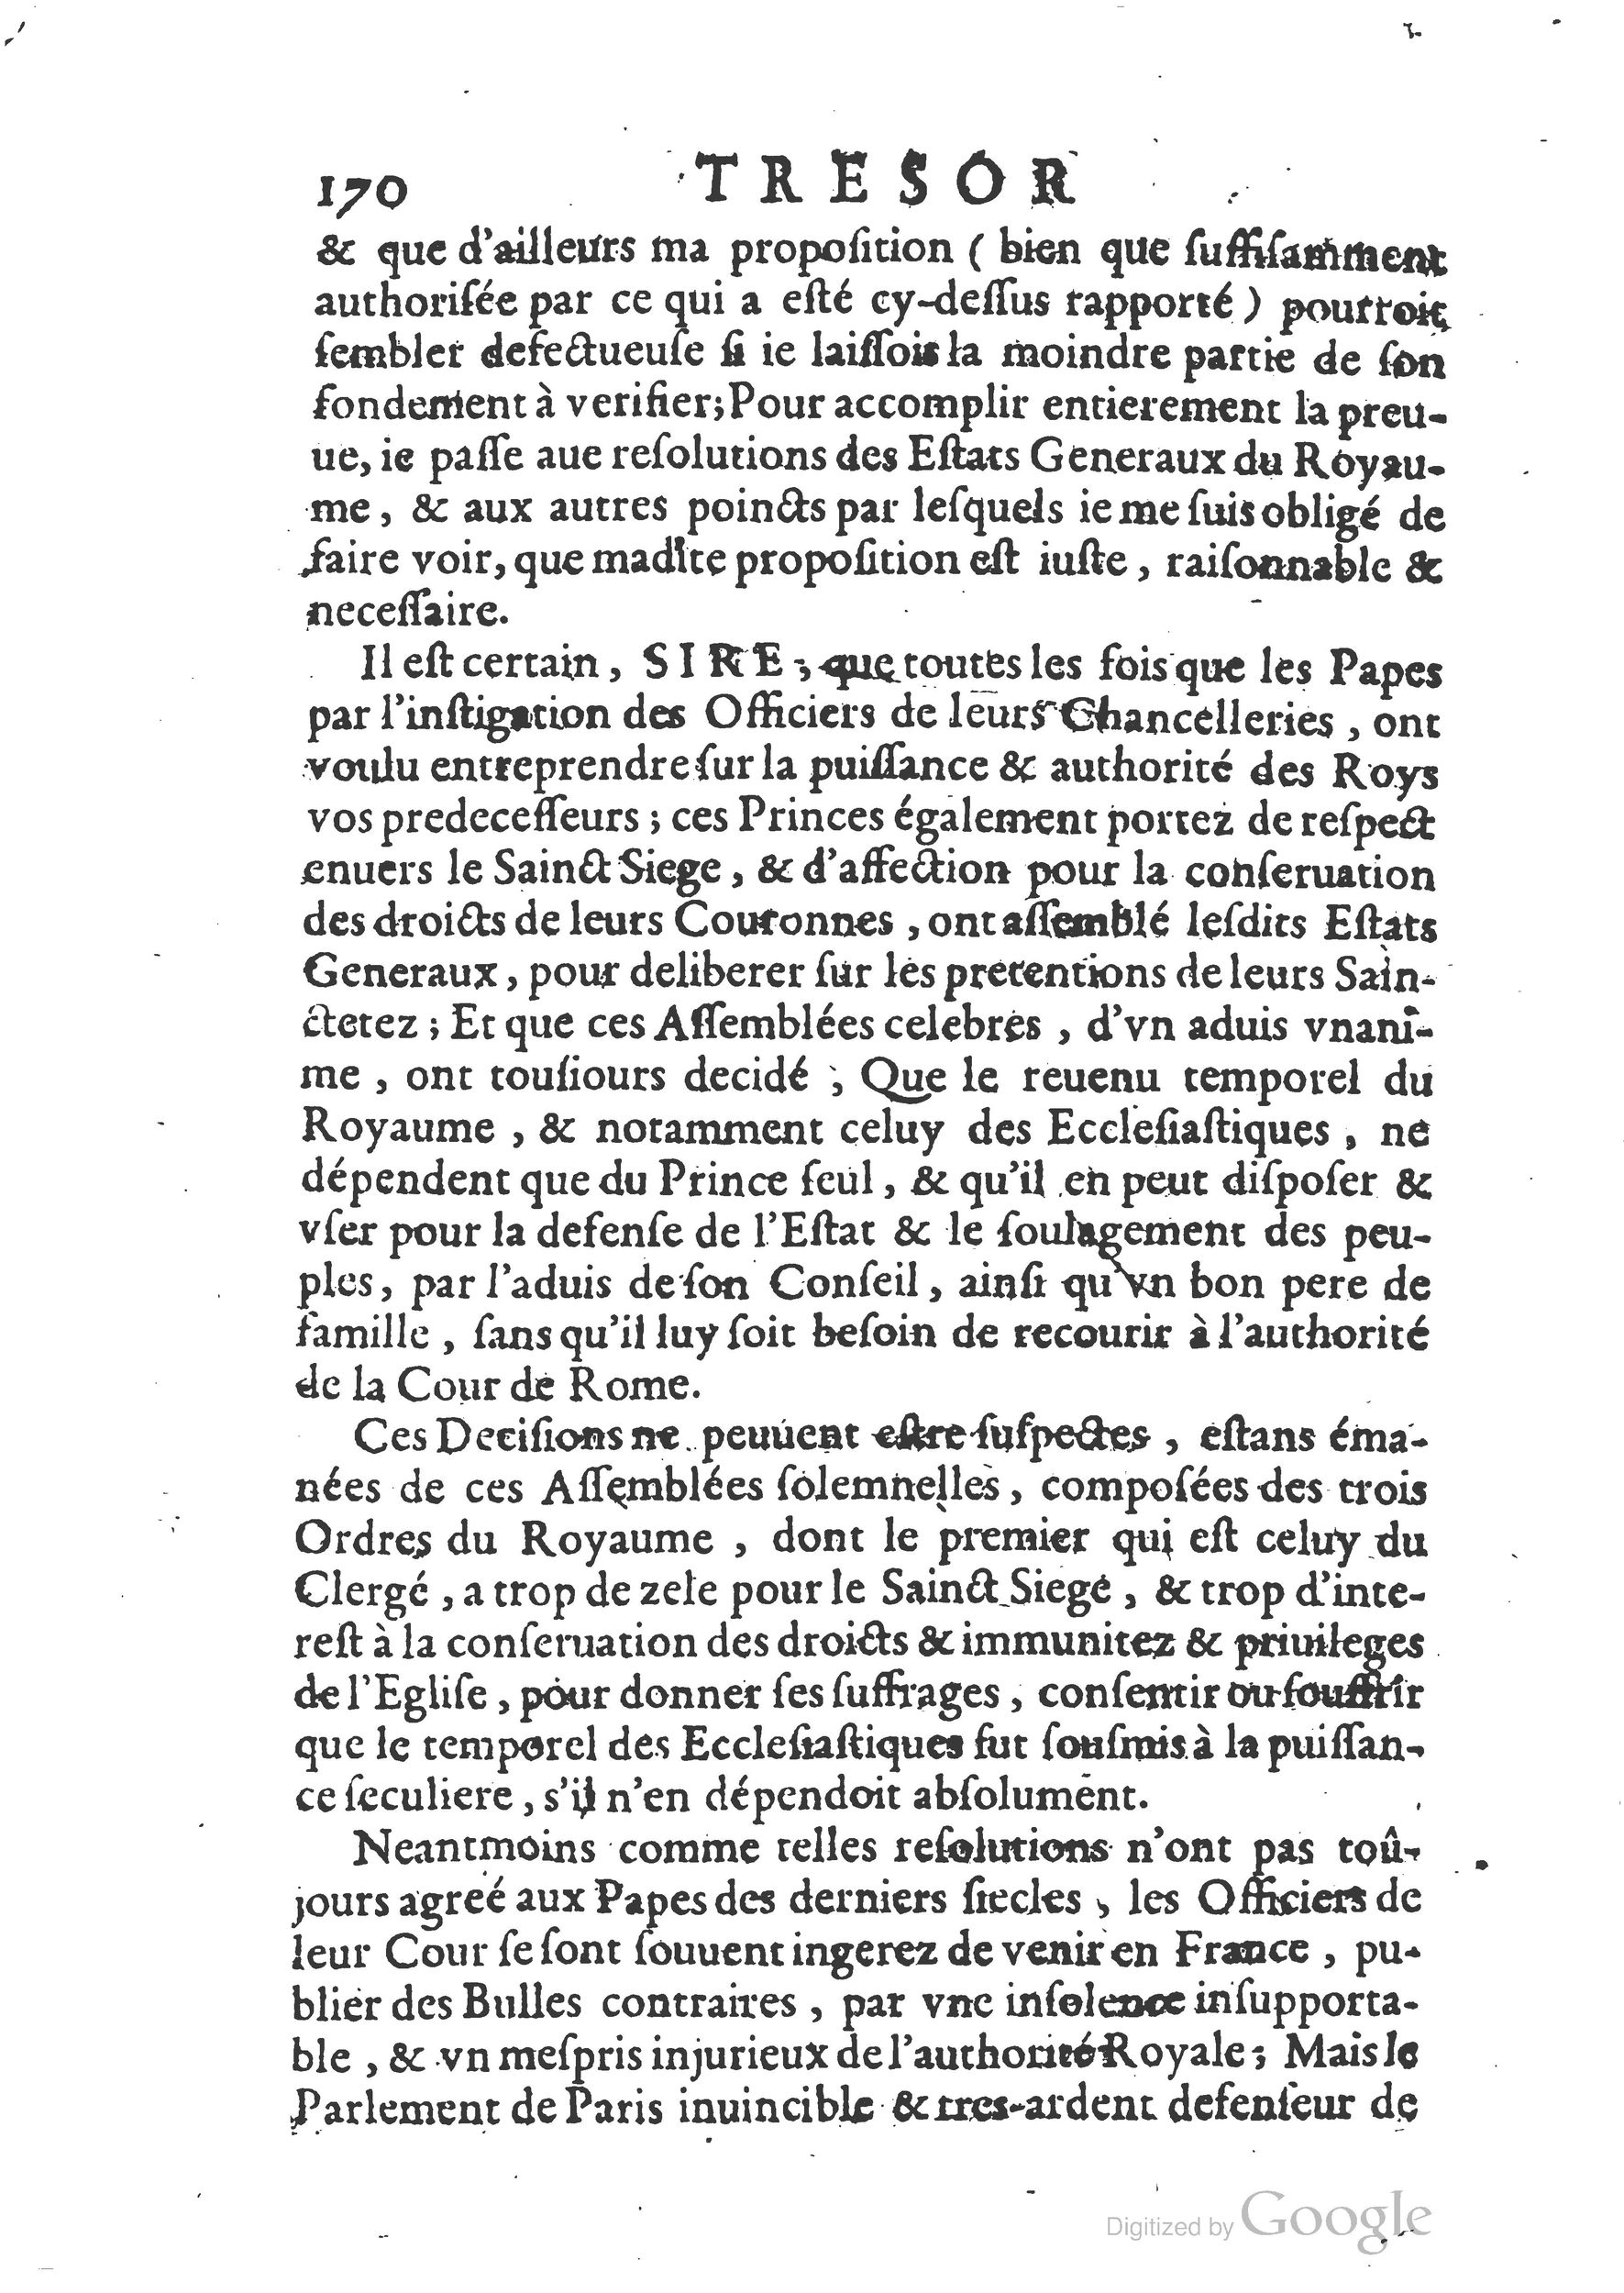 1654 Trésor des harangues, remontrances et oraisons funèbres Robin_BM Lyon_Page_409.jpg